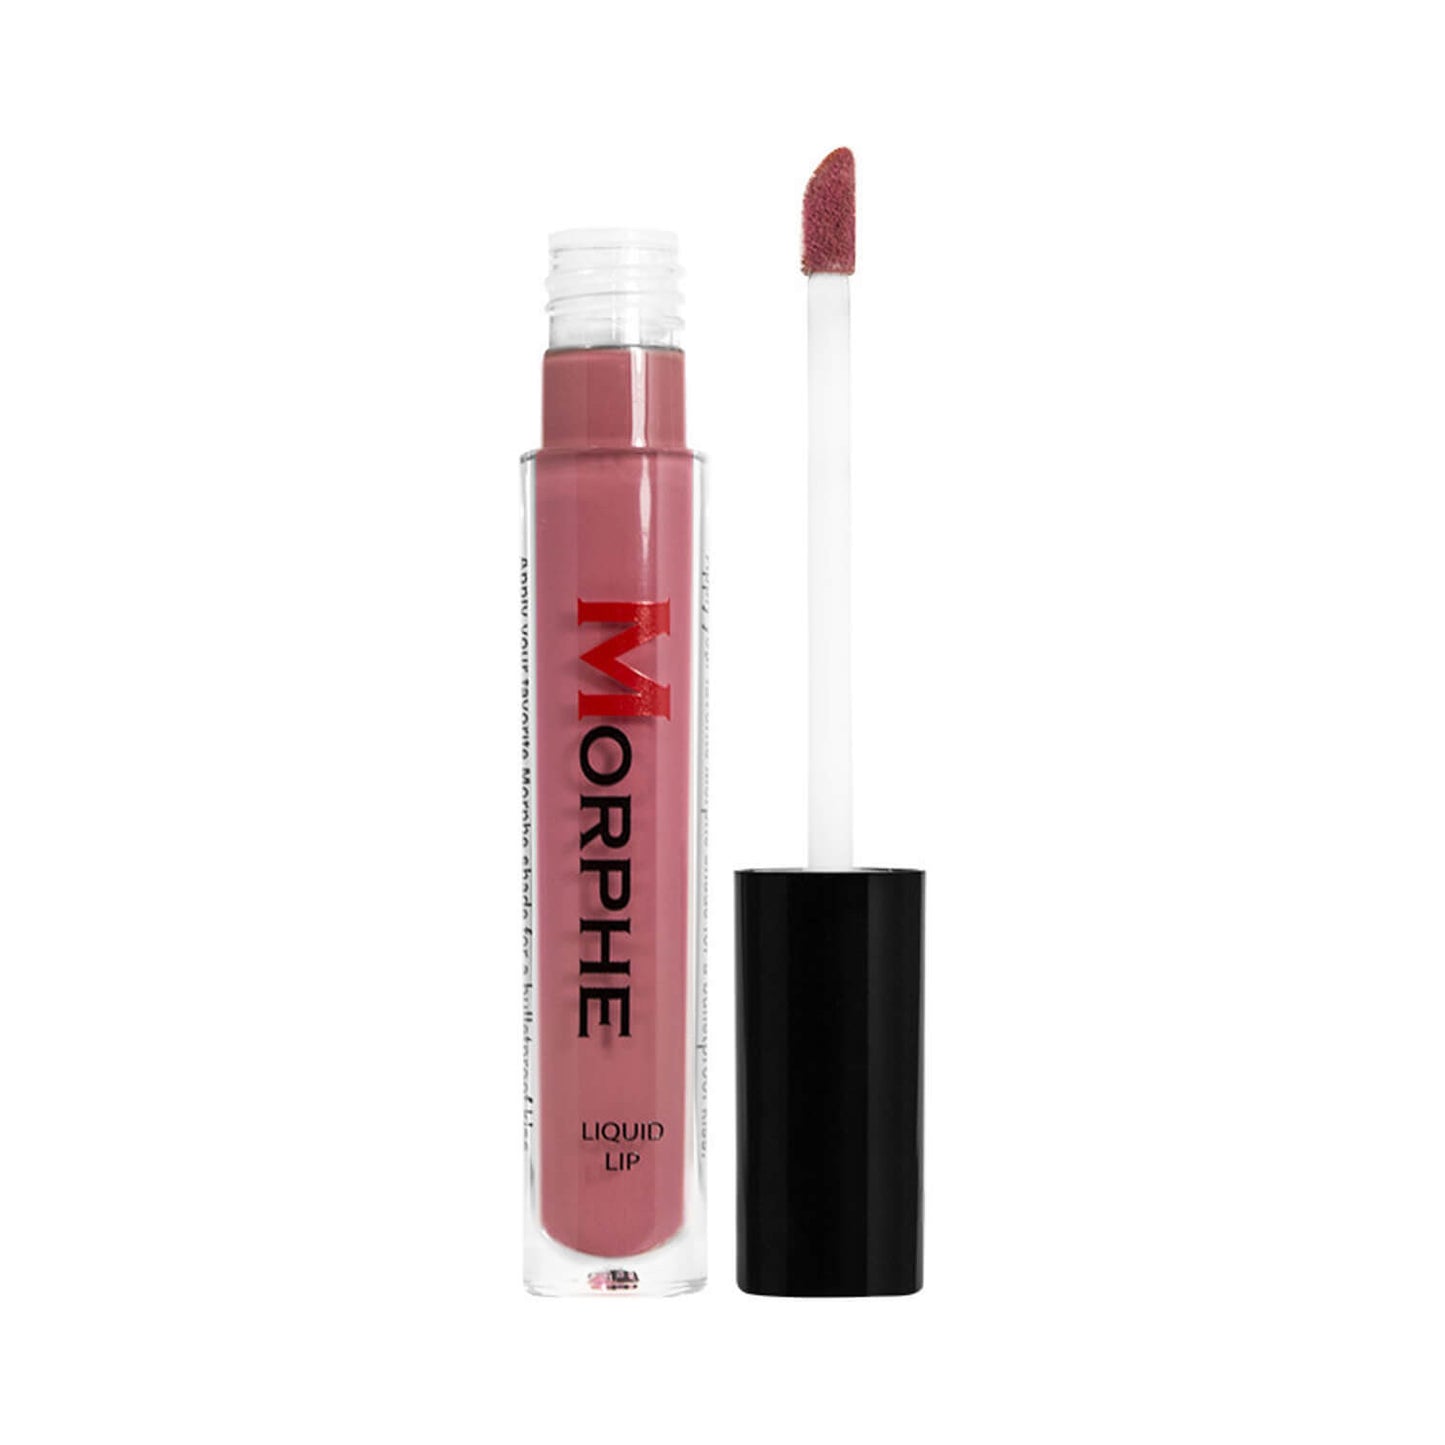 Morphe Cosmetics Liquid Lipstick Vanity